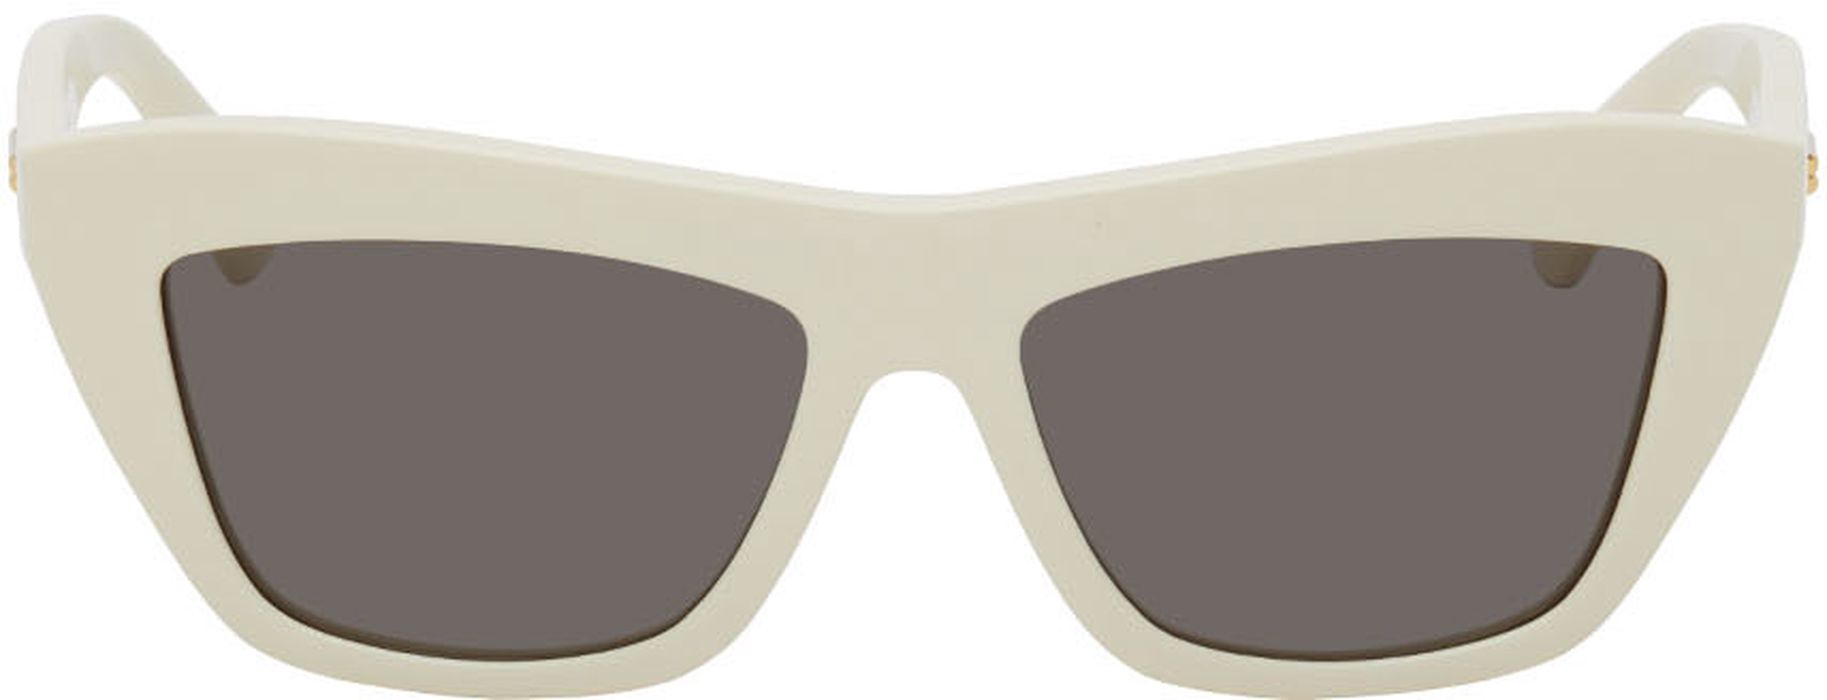 Bottega Veneta Off-White Cat-Eye Sunglasses